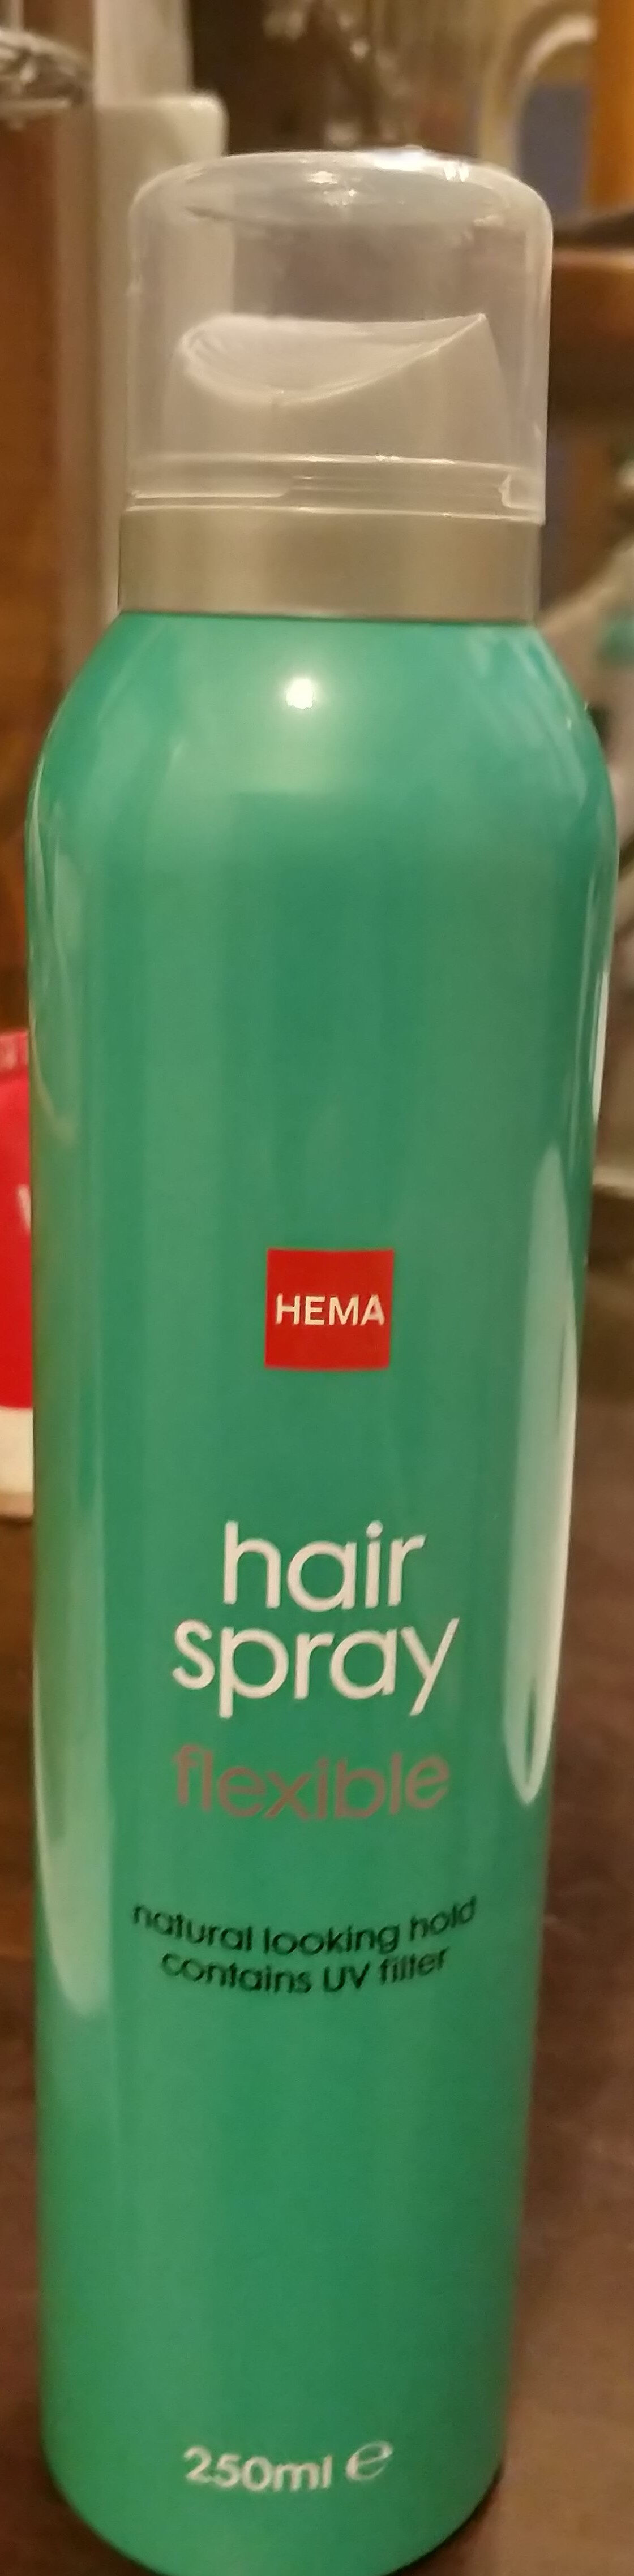 hair spray flexible - Product - fr